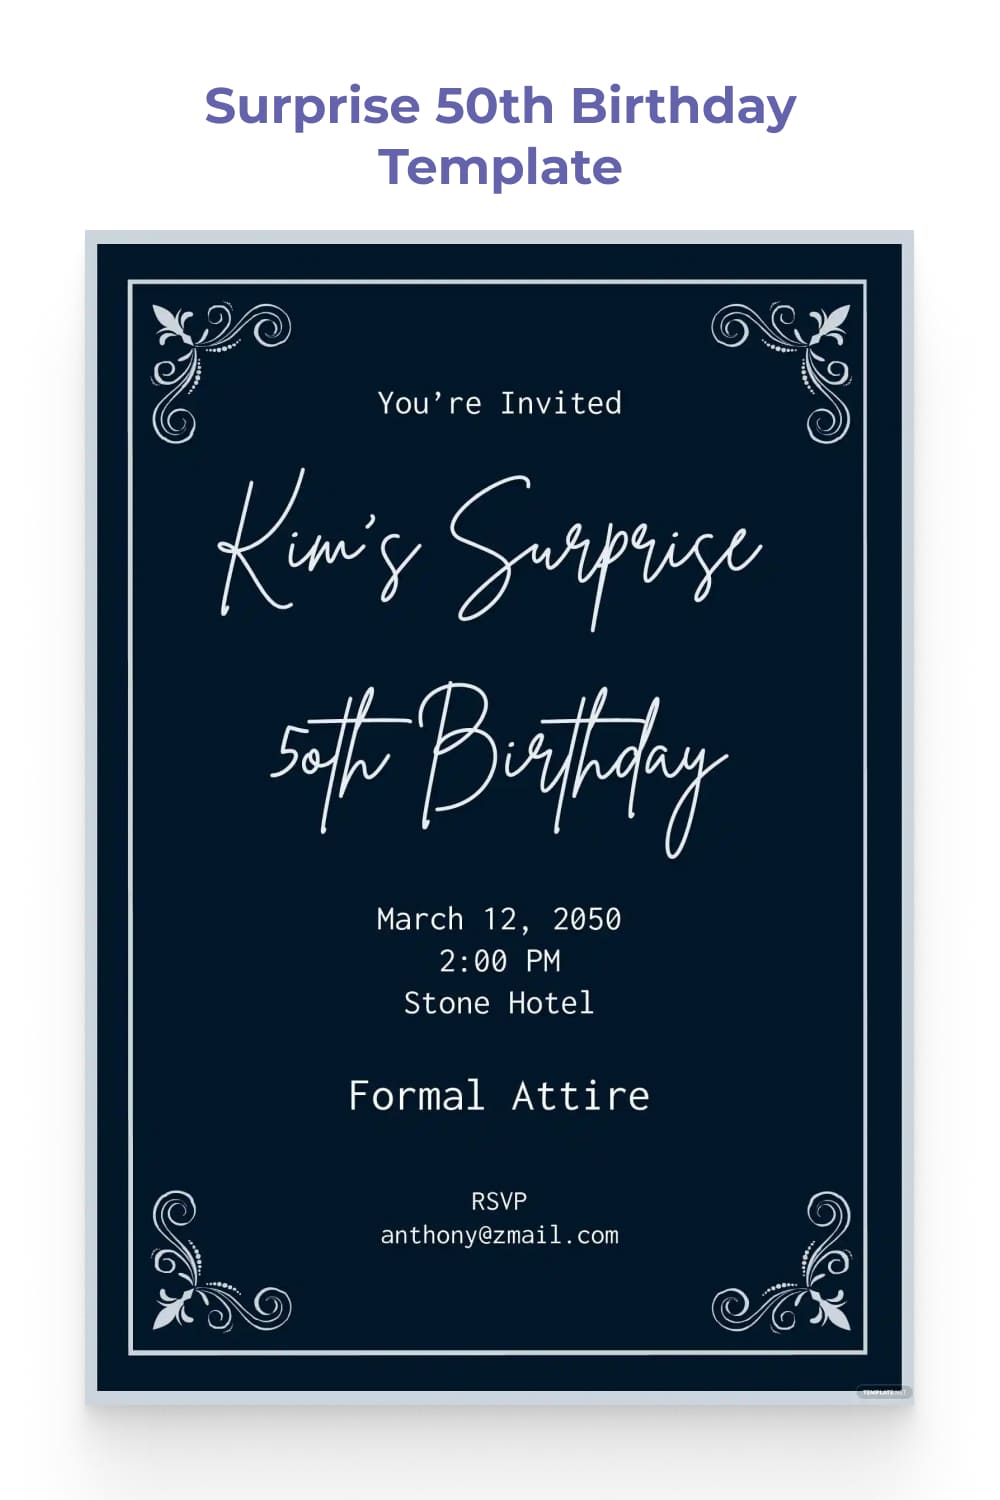 Birthday invitation with white handwritten text and dark background.